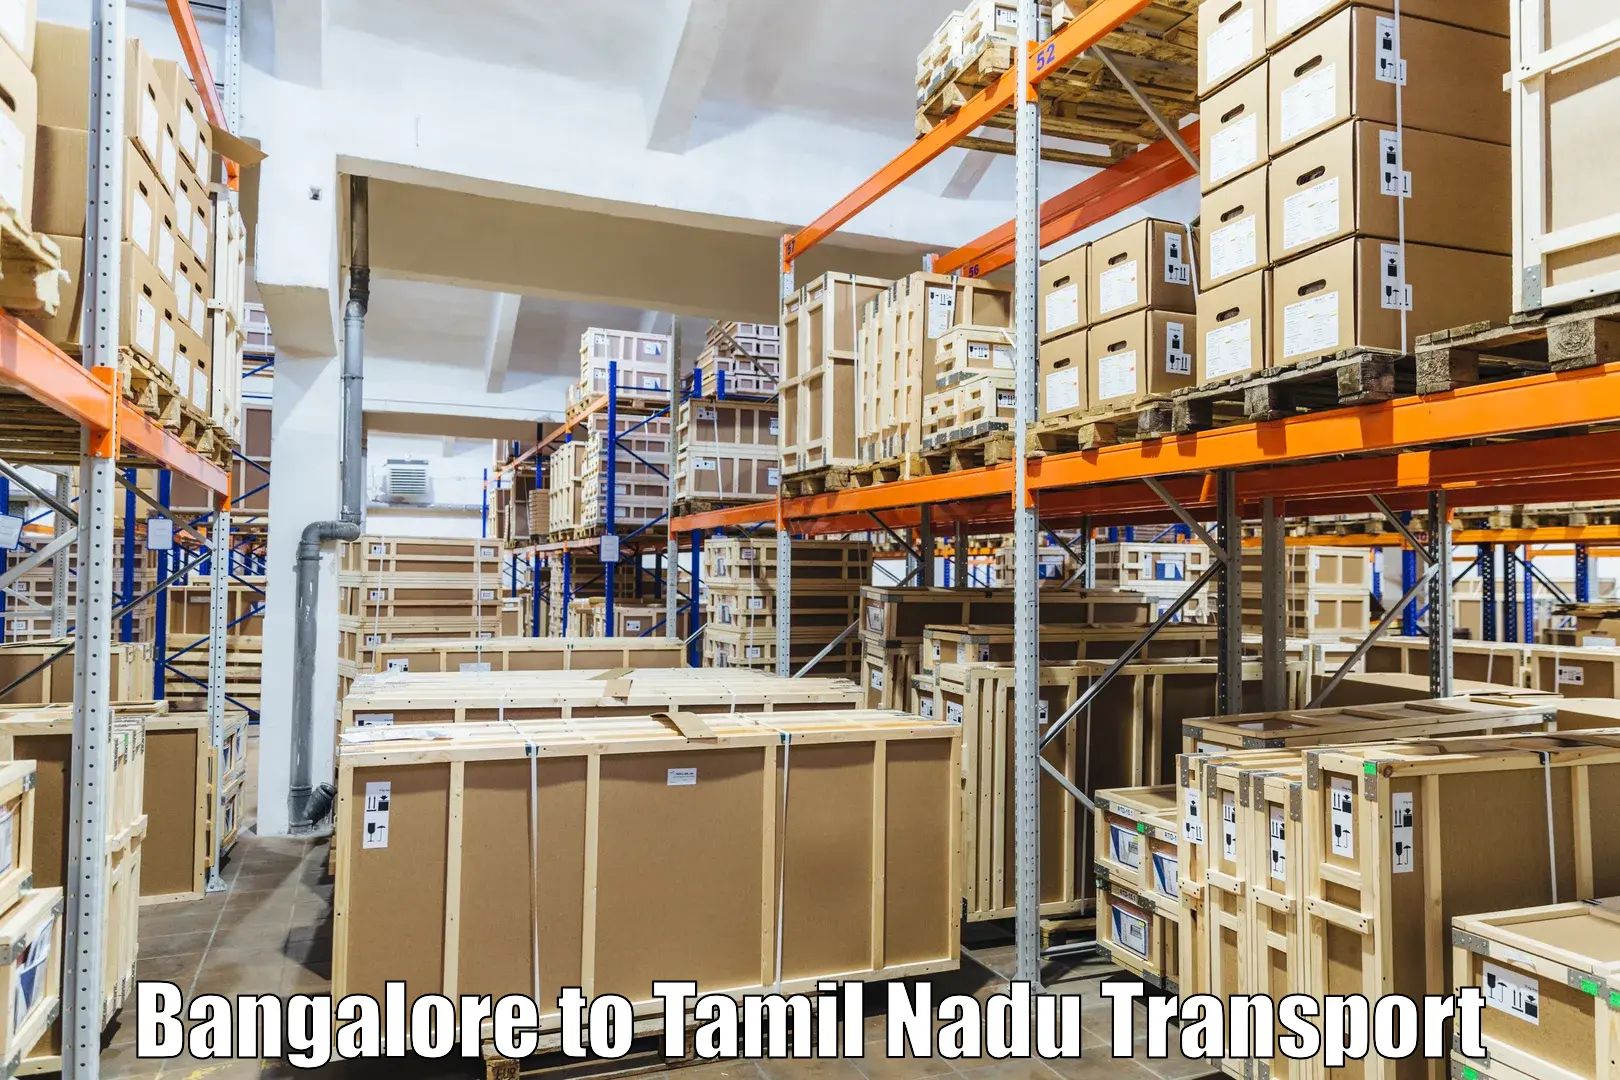 Daily parcel service transport Bangalore to Sholinghur